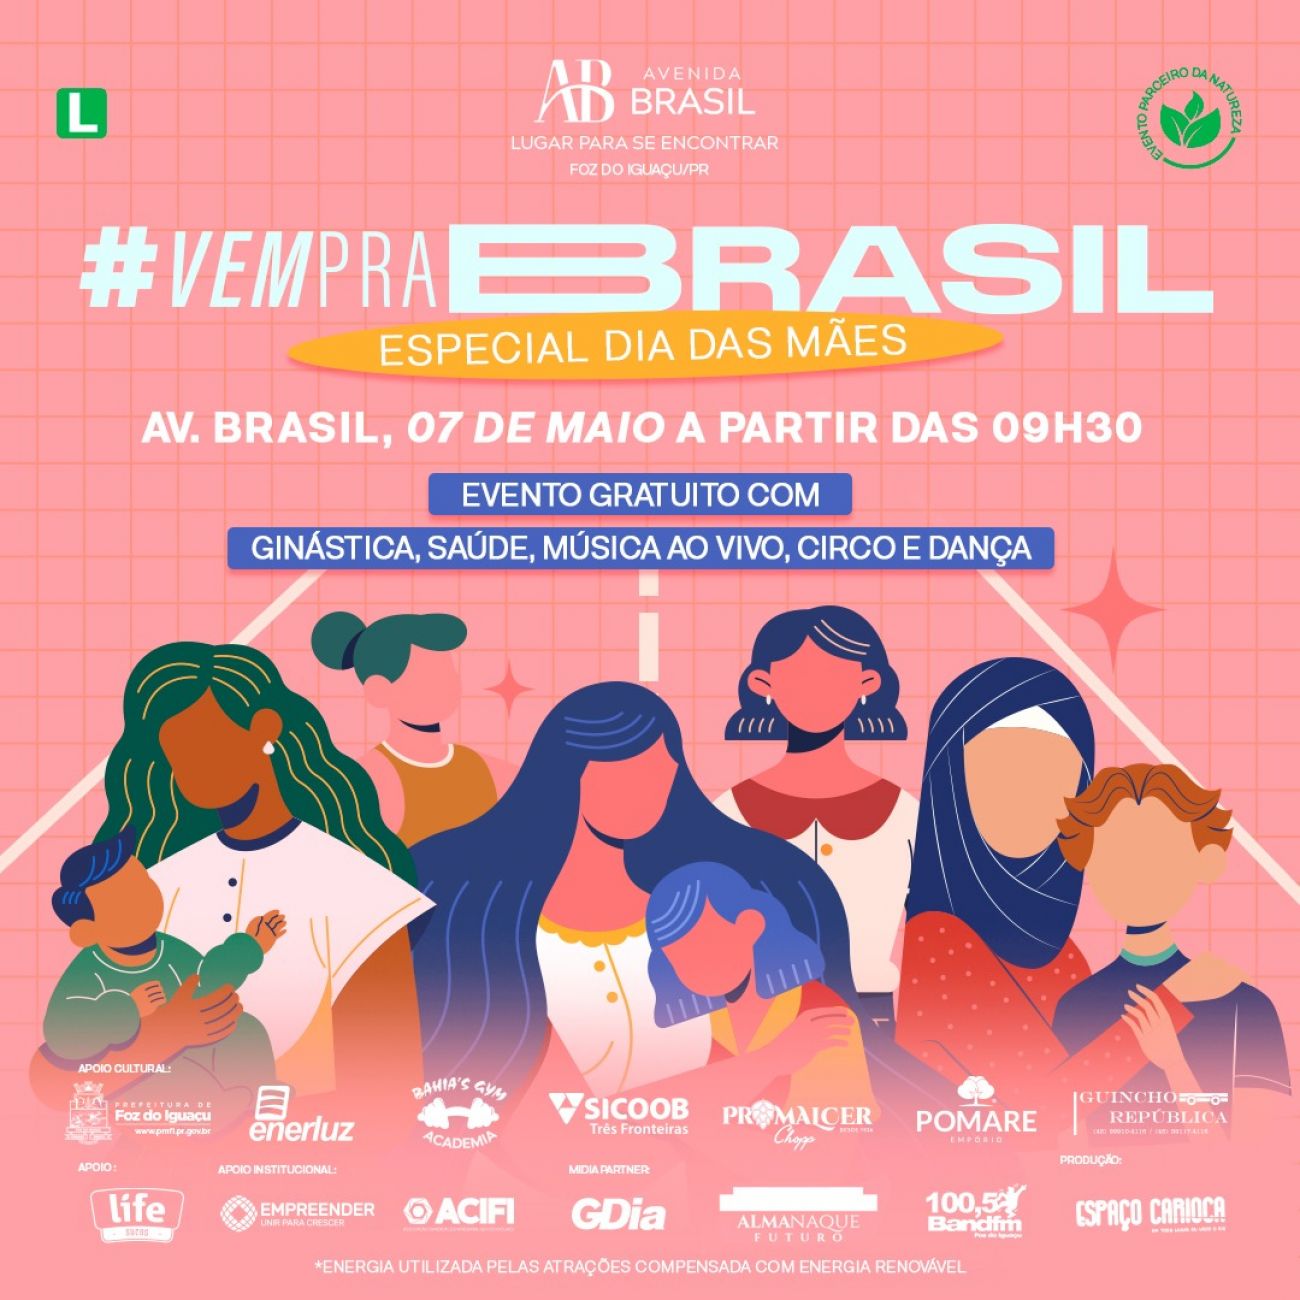 #VempraBrasil zieht am Samstag (07) mit verschiedenen Aktivitäten in die Central Street